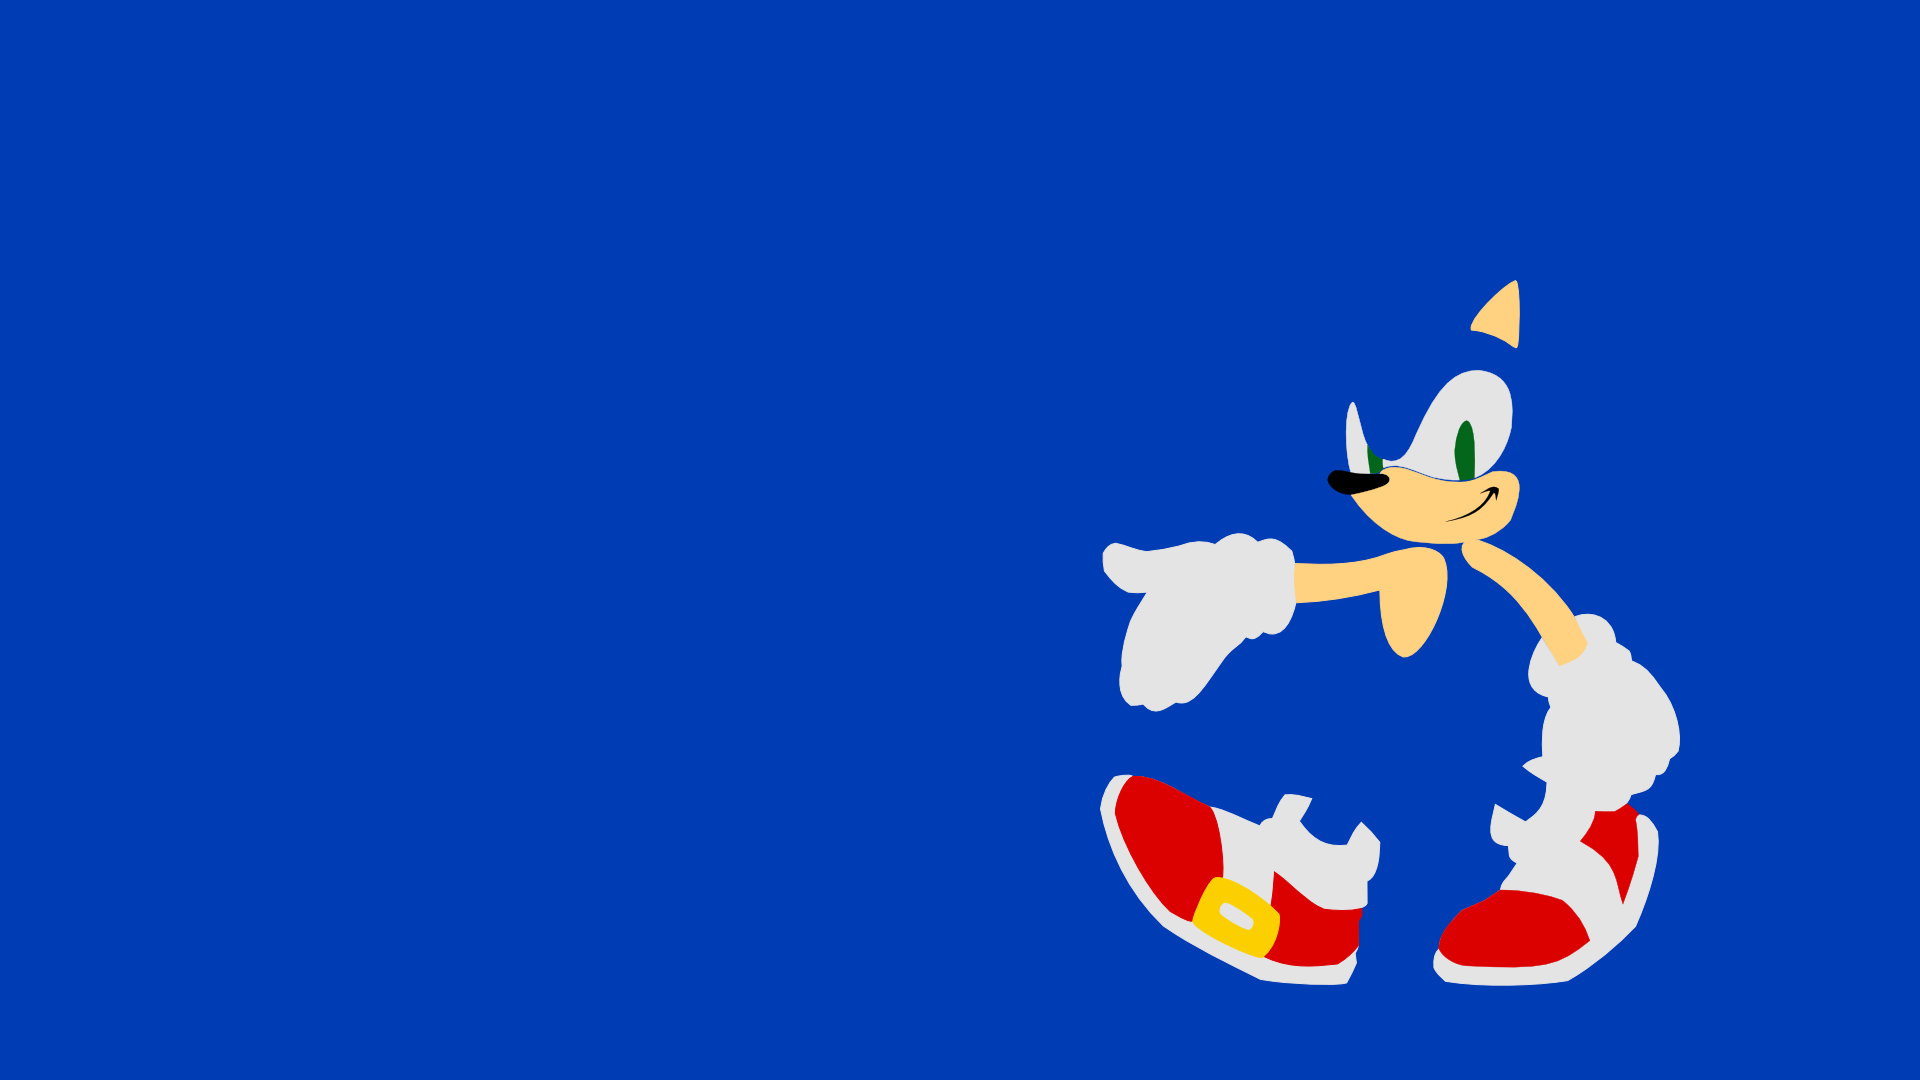 Free Download Sonic The Hedgehog Computer Wallpapers Desktop